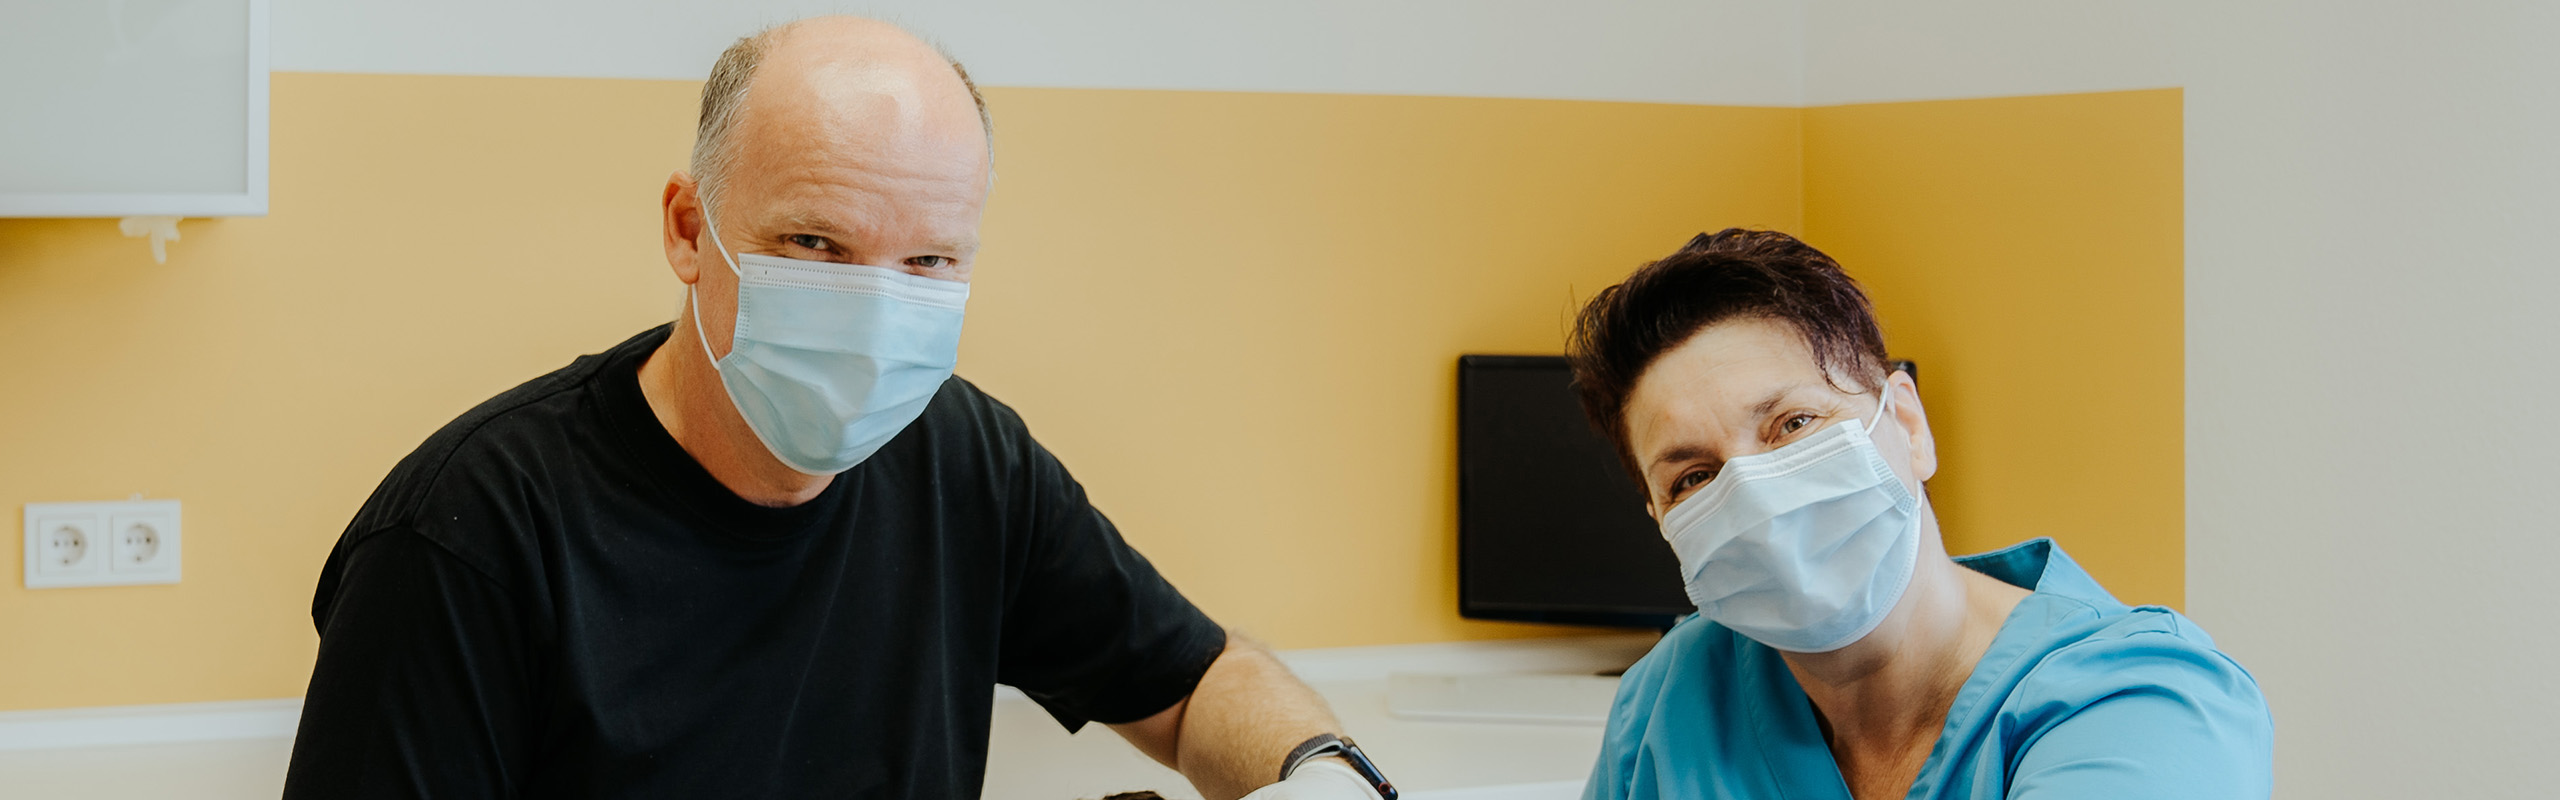 Parodontitis - Der Zahnarzt Frank Kruse und eine Zahnarzthelferin in einer Behandlung in der Zahnarztpraxis Frank Kruse in Wutöschingen-Horheim